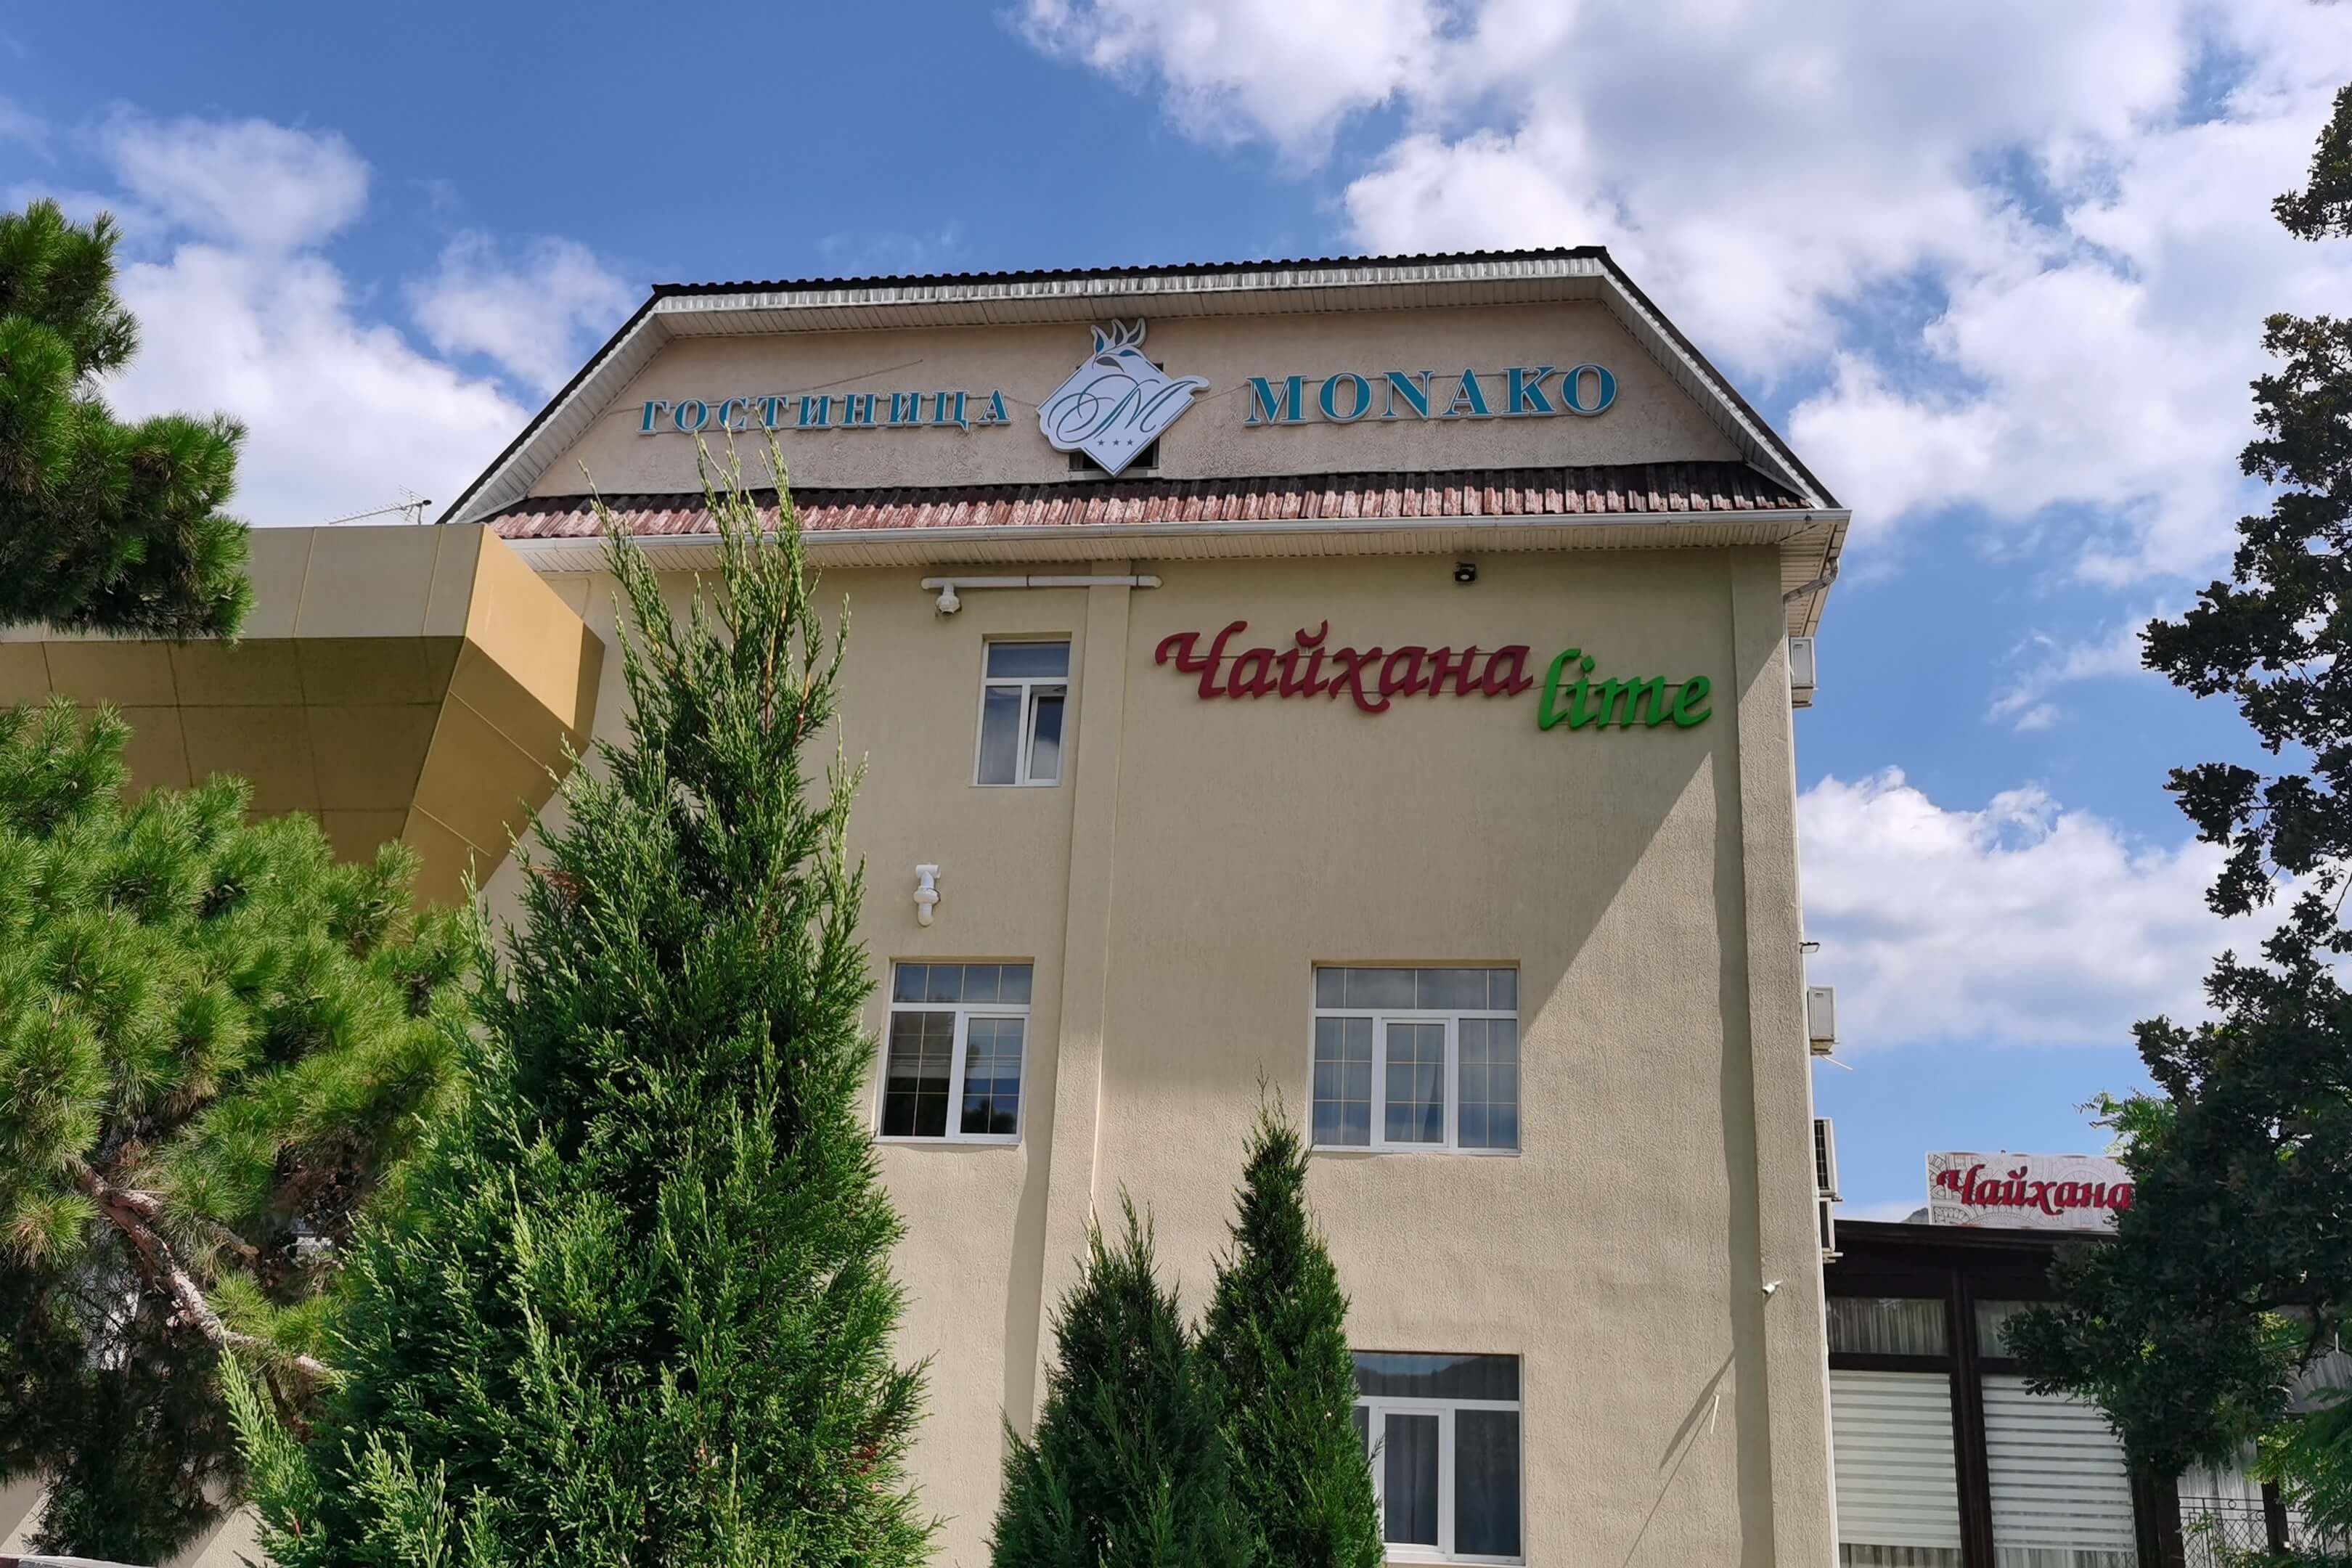 Название отеля и ресторана на фасаде.